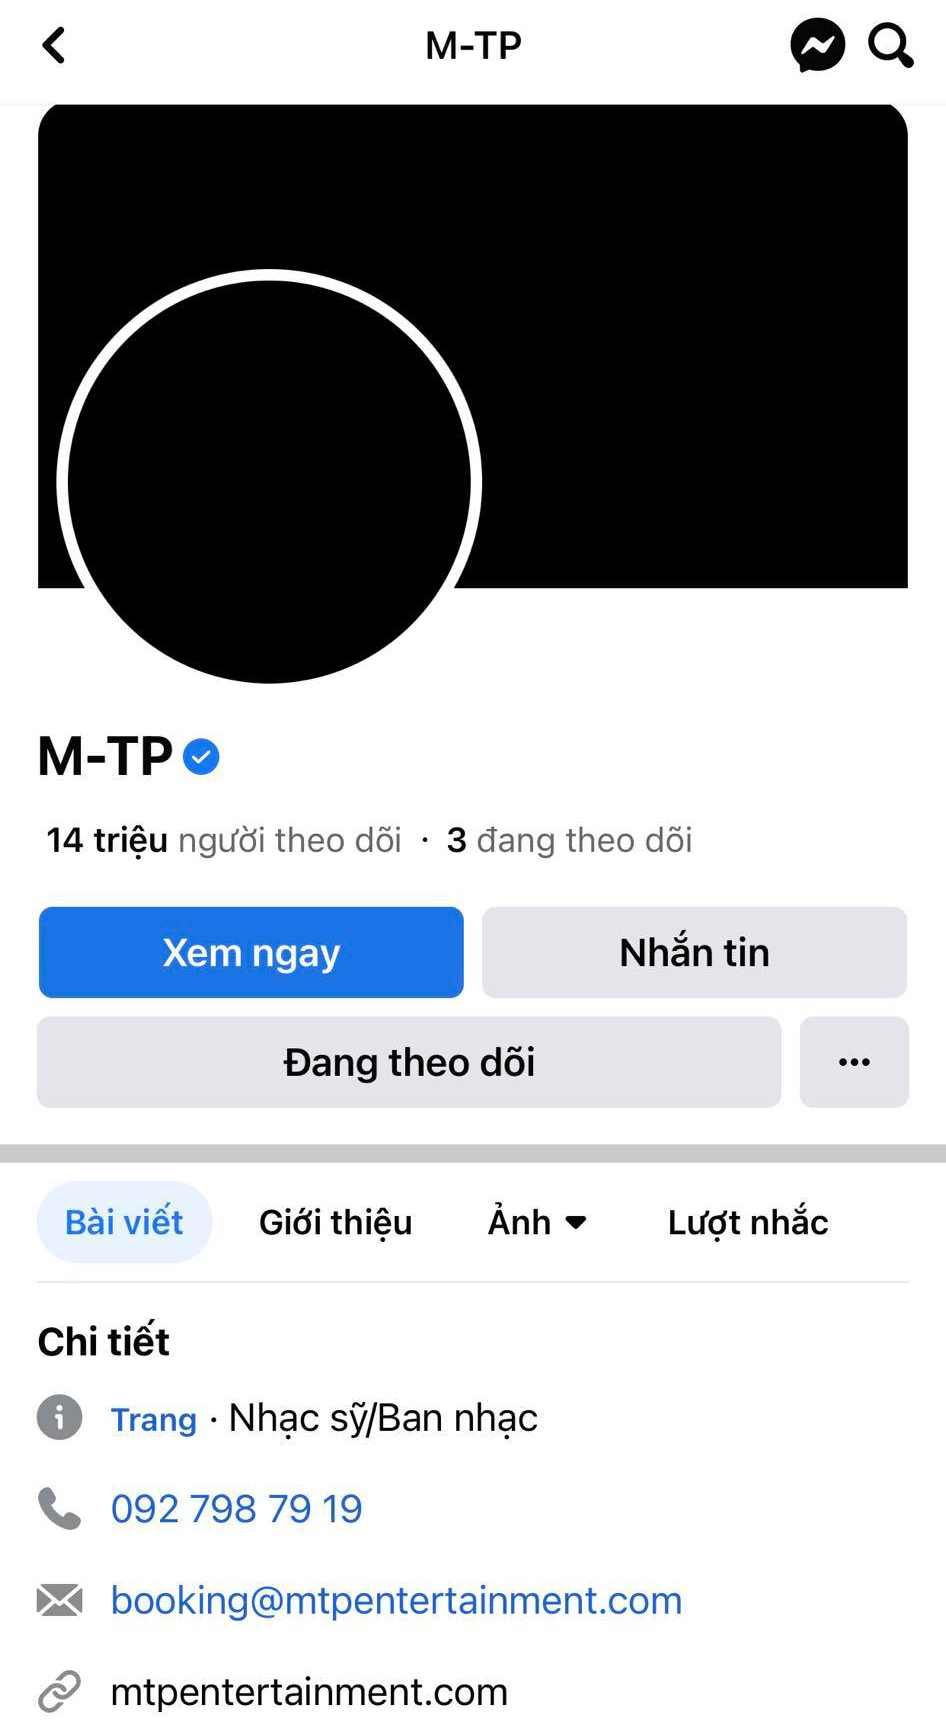 Sơn Tùng M-TP đổi ảnh đại diện Facebook sang màu đen, ca sĩ Dương Triệu Vũ vào chia buồn cùng gia đình